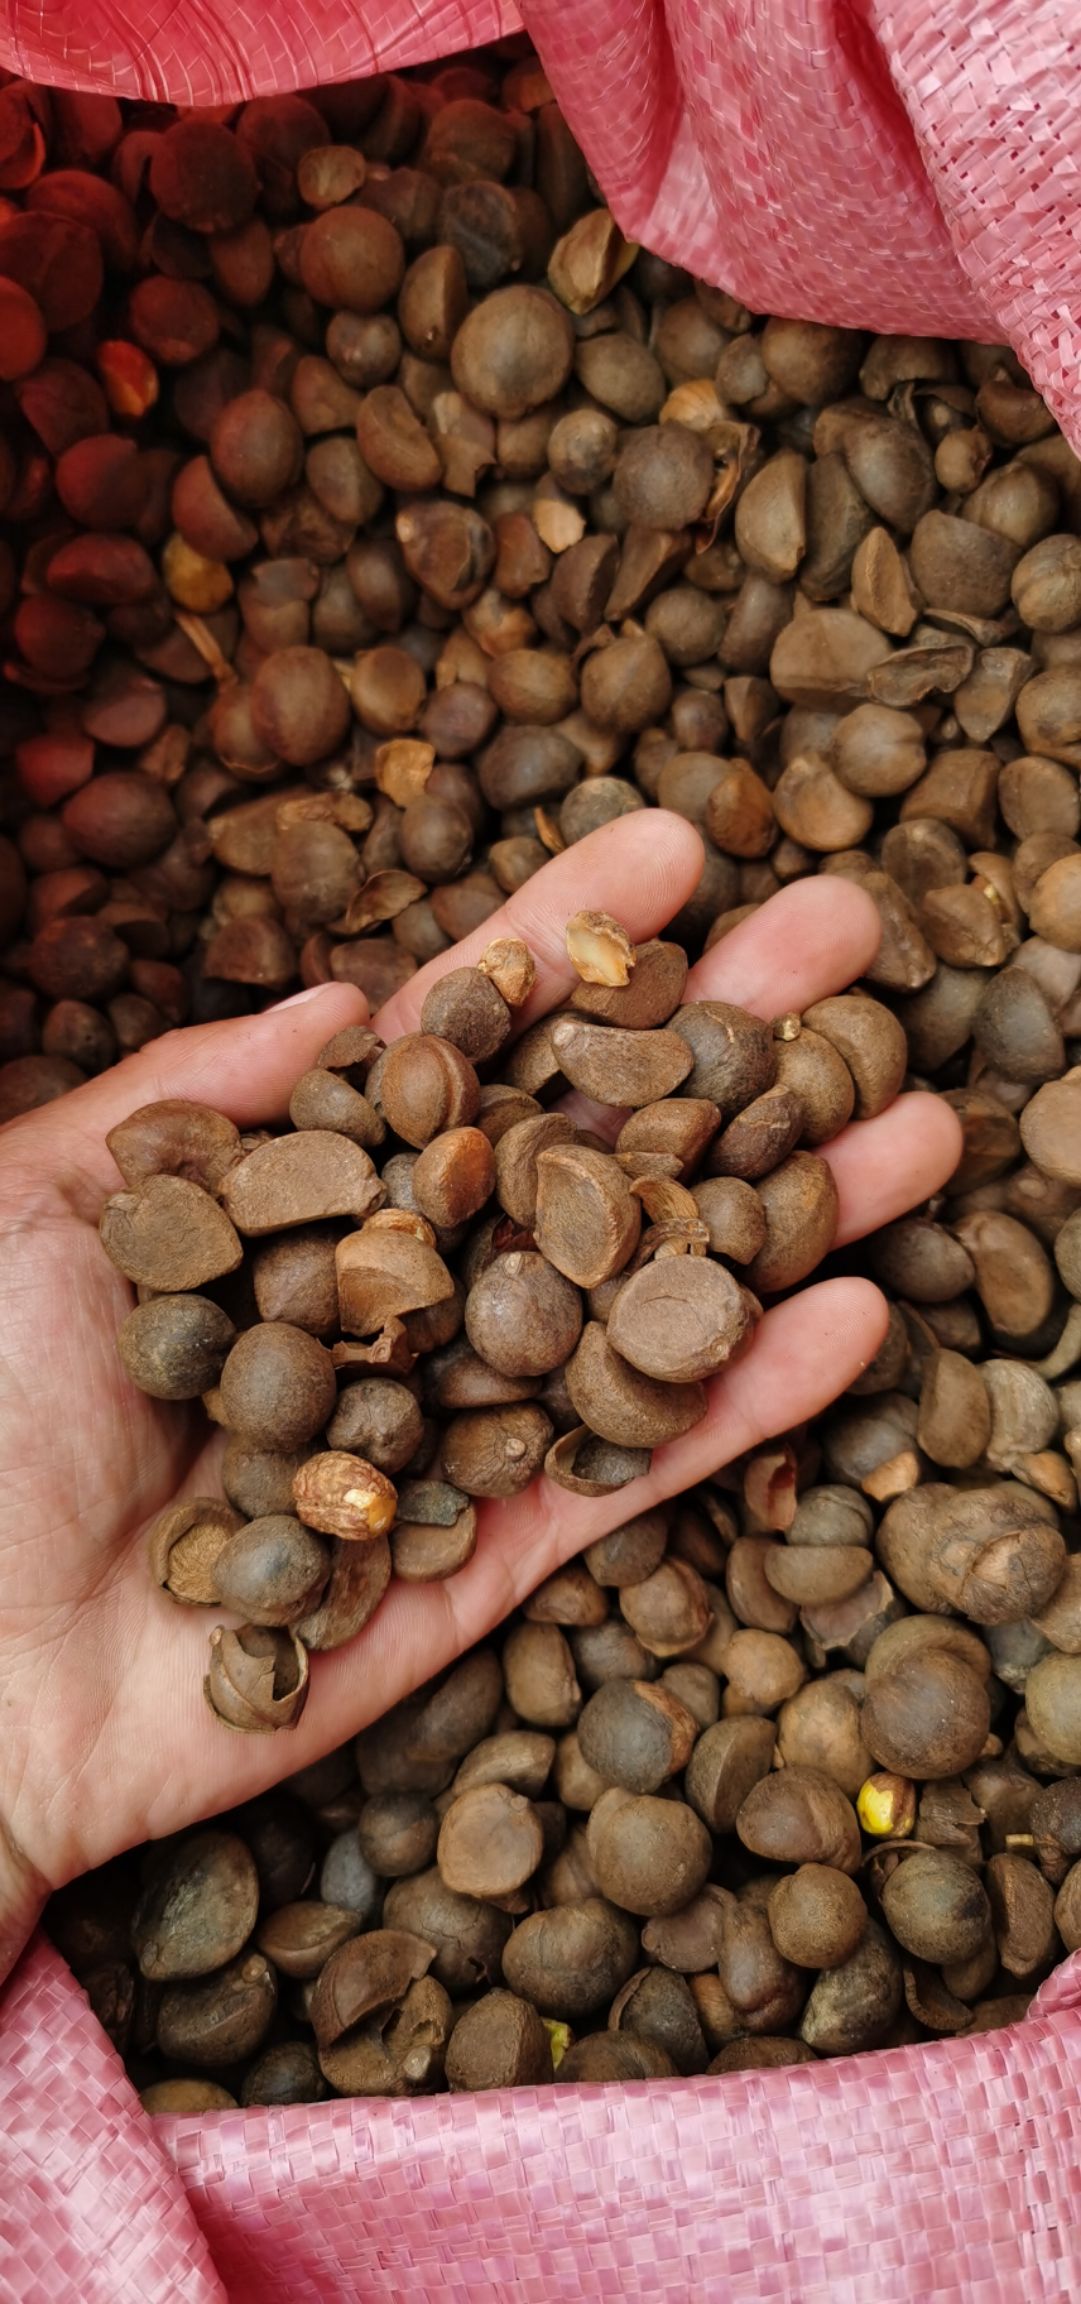 [油茶籽批发]油茶籽 茶油籽 茶油果 干籽价格8.7元/斤 - 惠农网